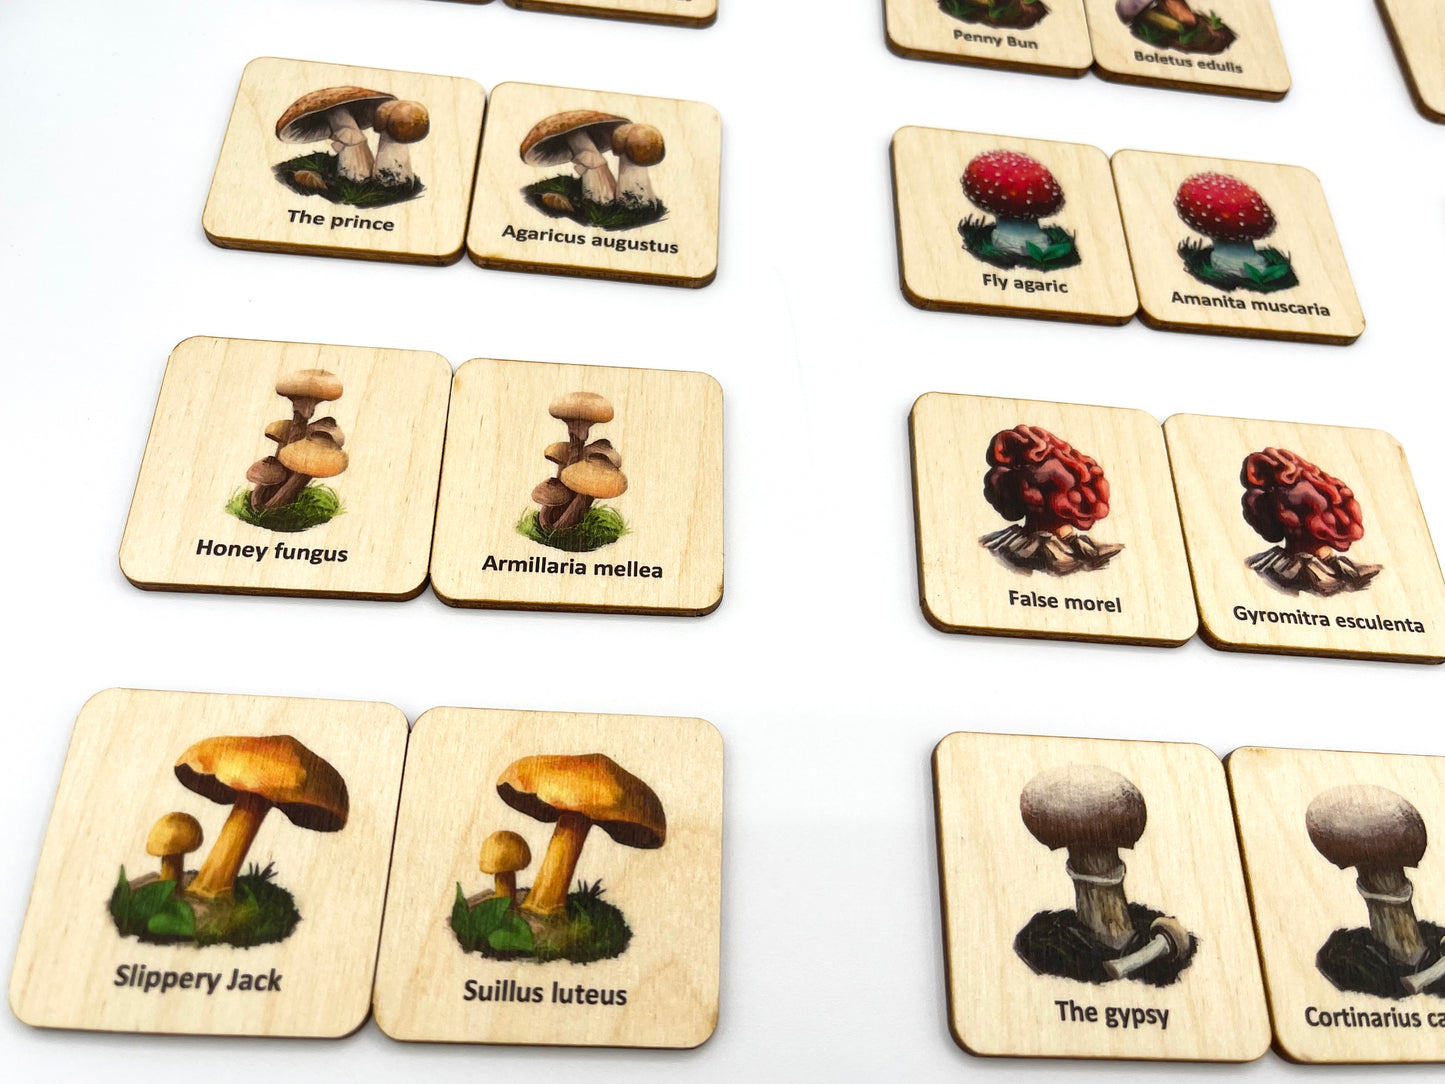 Wood Mushroom Fungi memory game